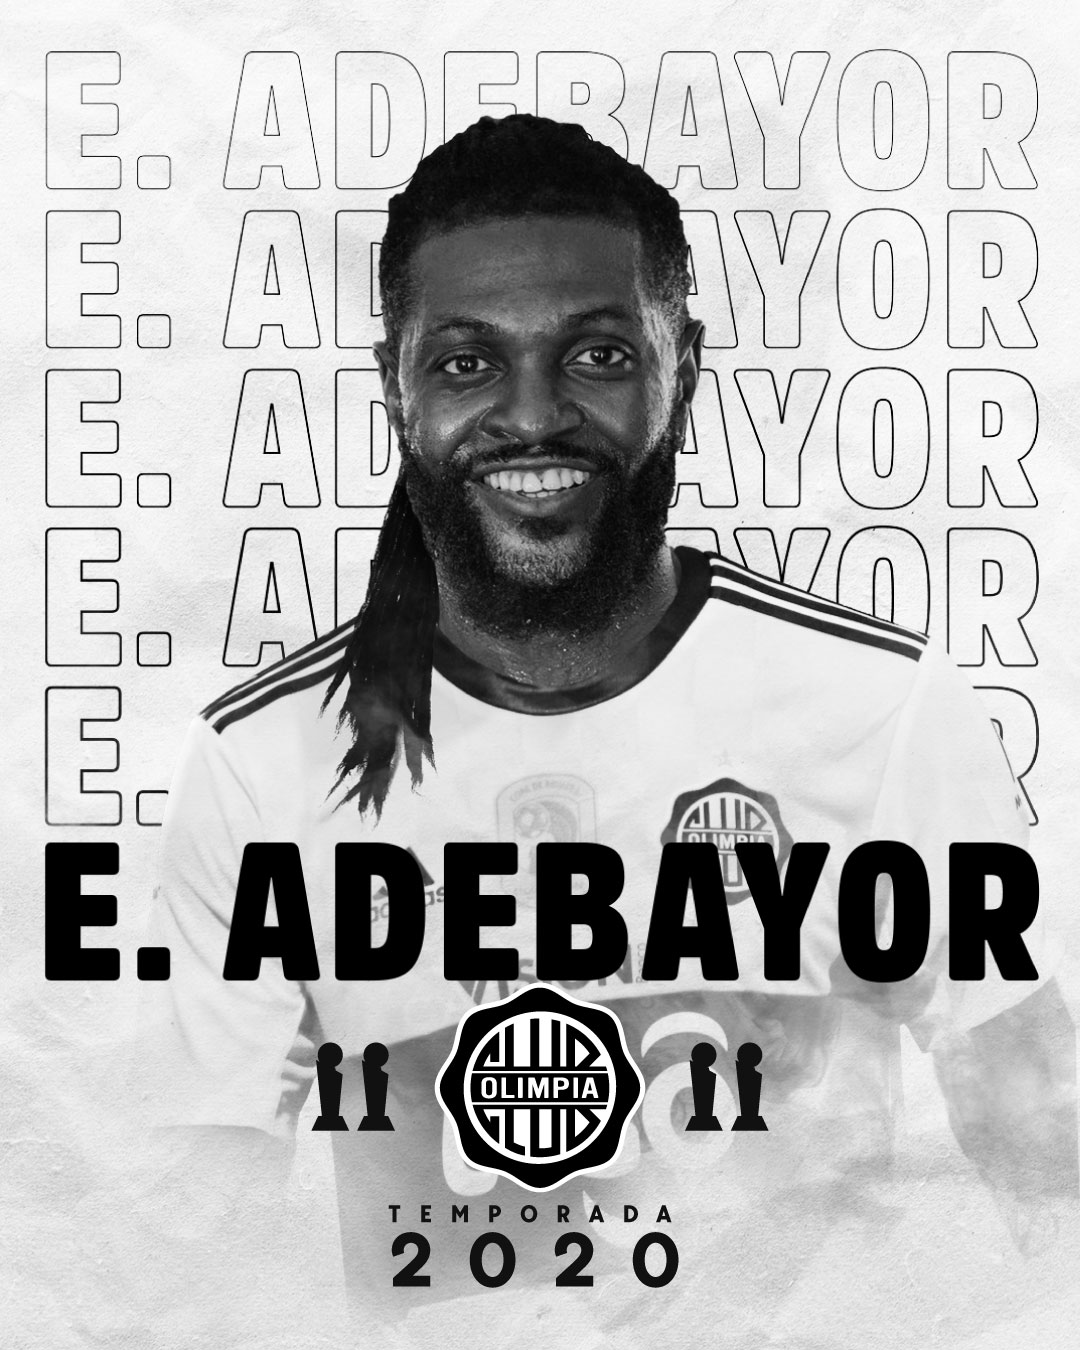 Emmanuel Adebayor será presentado el próximo viernes en Para Uno. Imagen: @elClubOlimpia (Twitter)